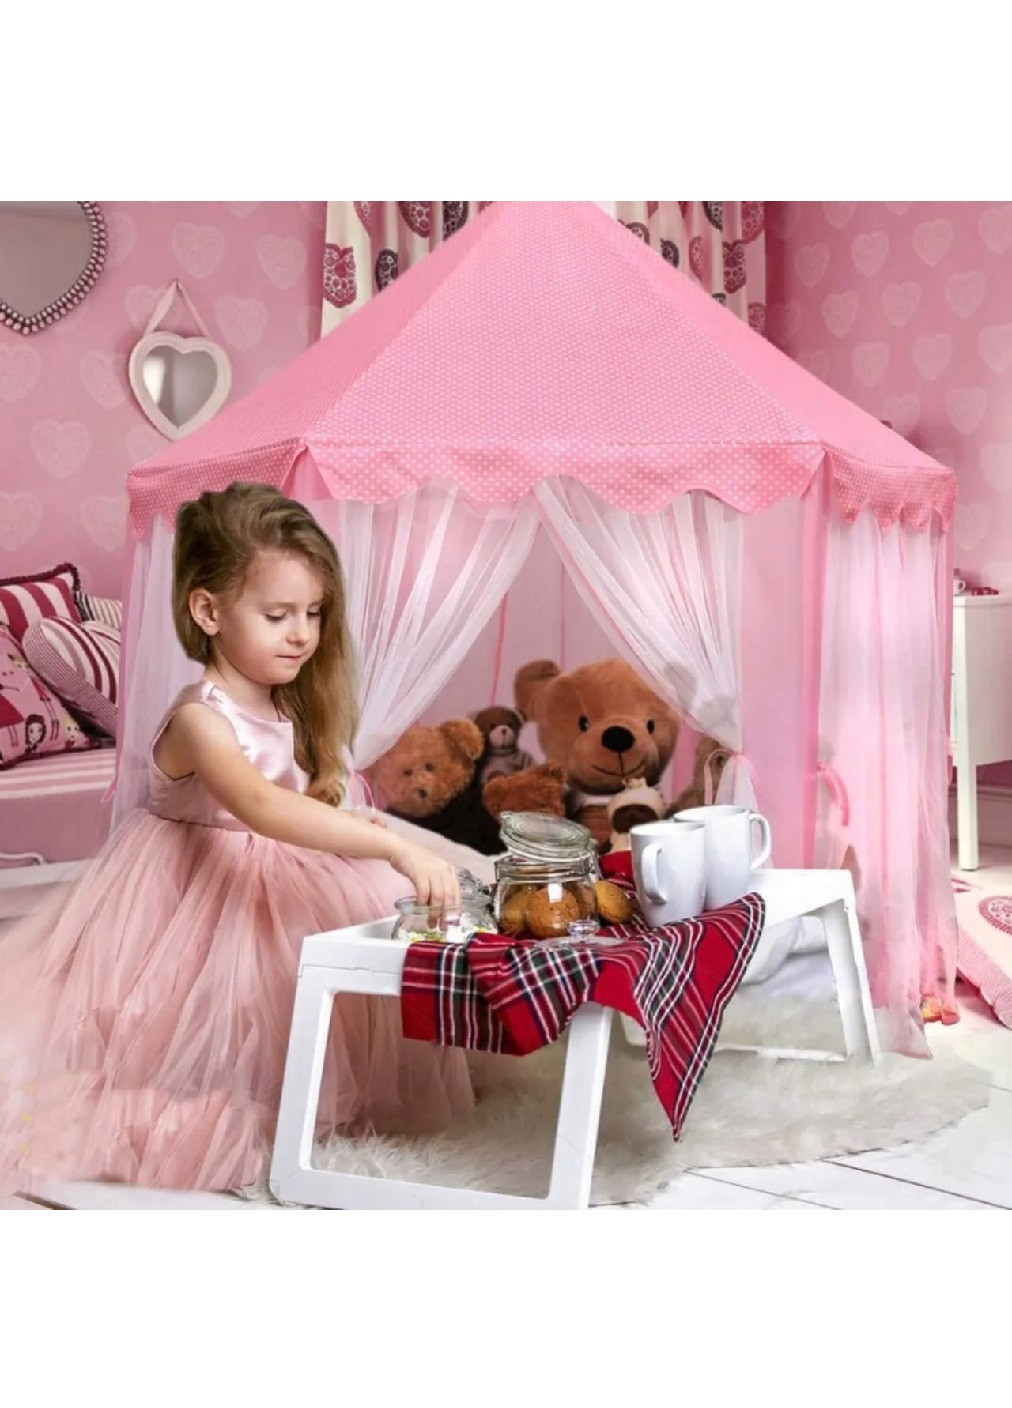 Детская игровая палатка шатер домик замок дворец для девочек 135х135х140см (474526-Prob) Розовый Unbranded (258670732)